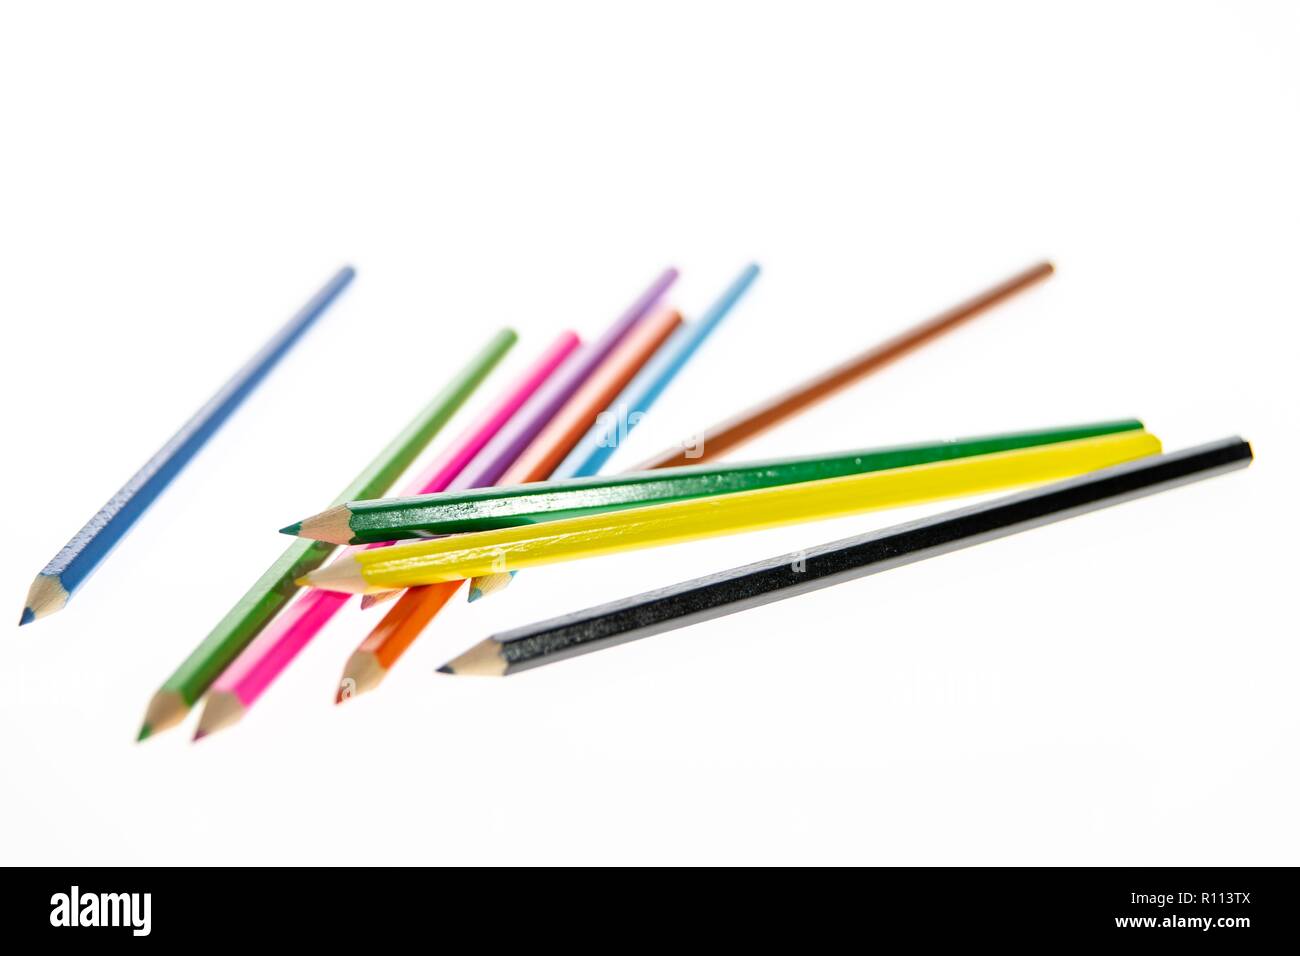 Crayons de couleur disposés au hasard sur un fond blanc. Crayons de couleur. Les crayons sont affûtés prêts pour le dessin ou croquis. Banque D'Images